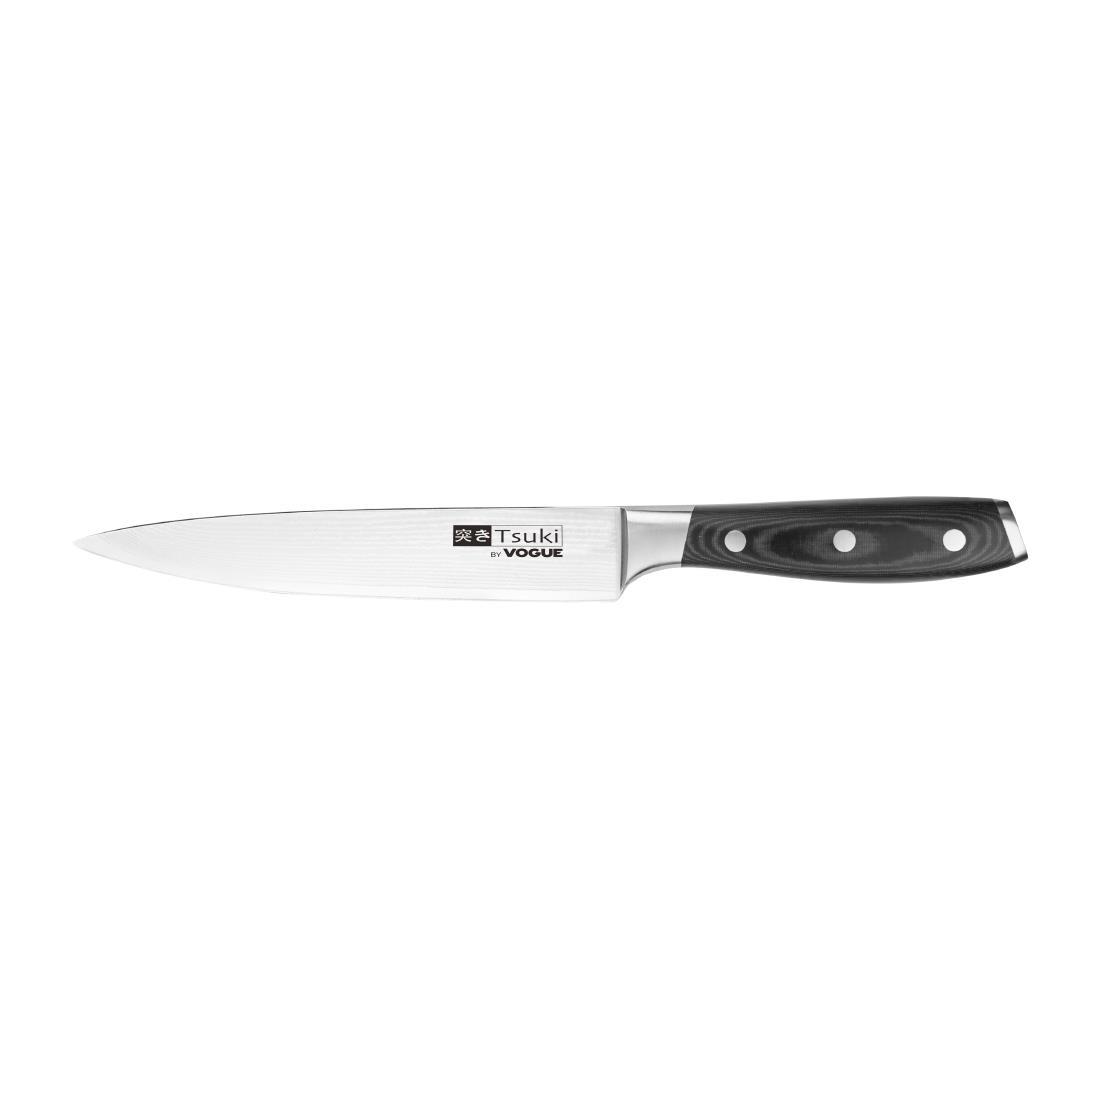 Vogue Tsuki Series 7 Carving Knife 20.5cm - CF843  - 2